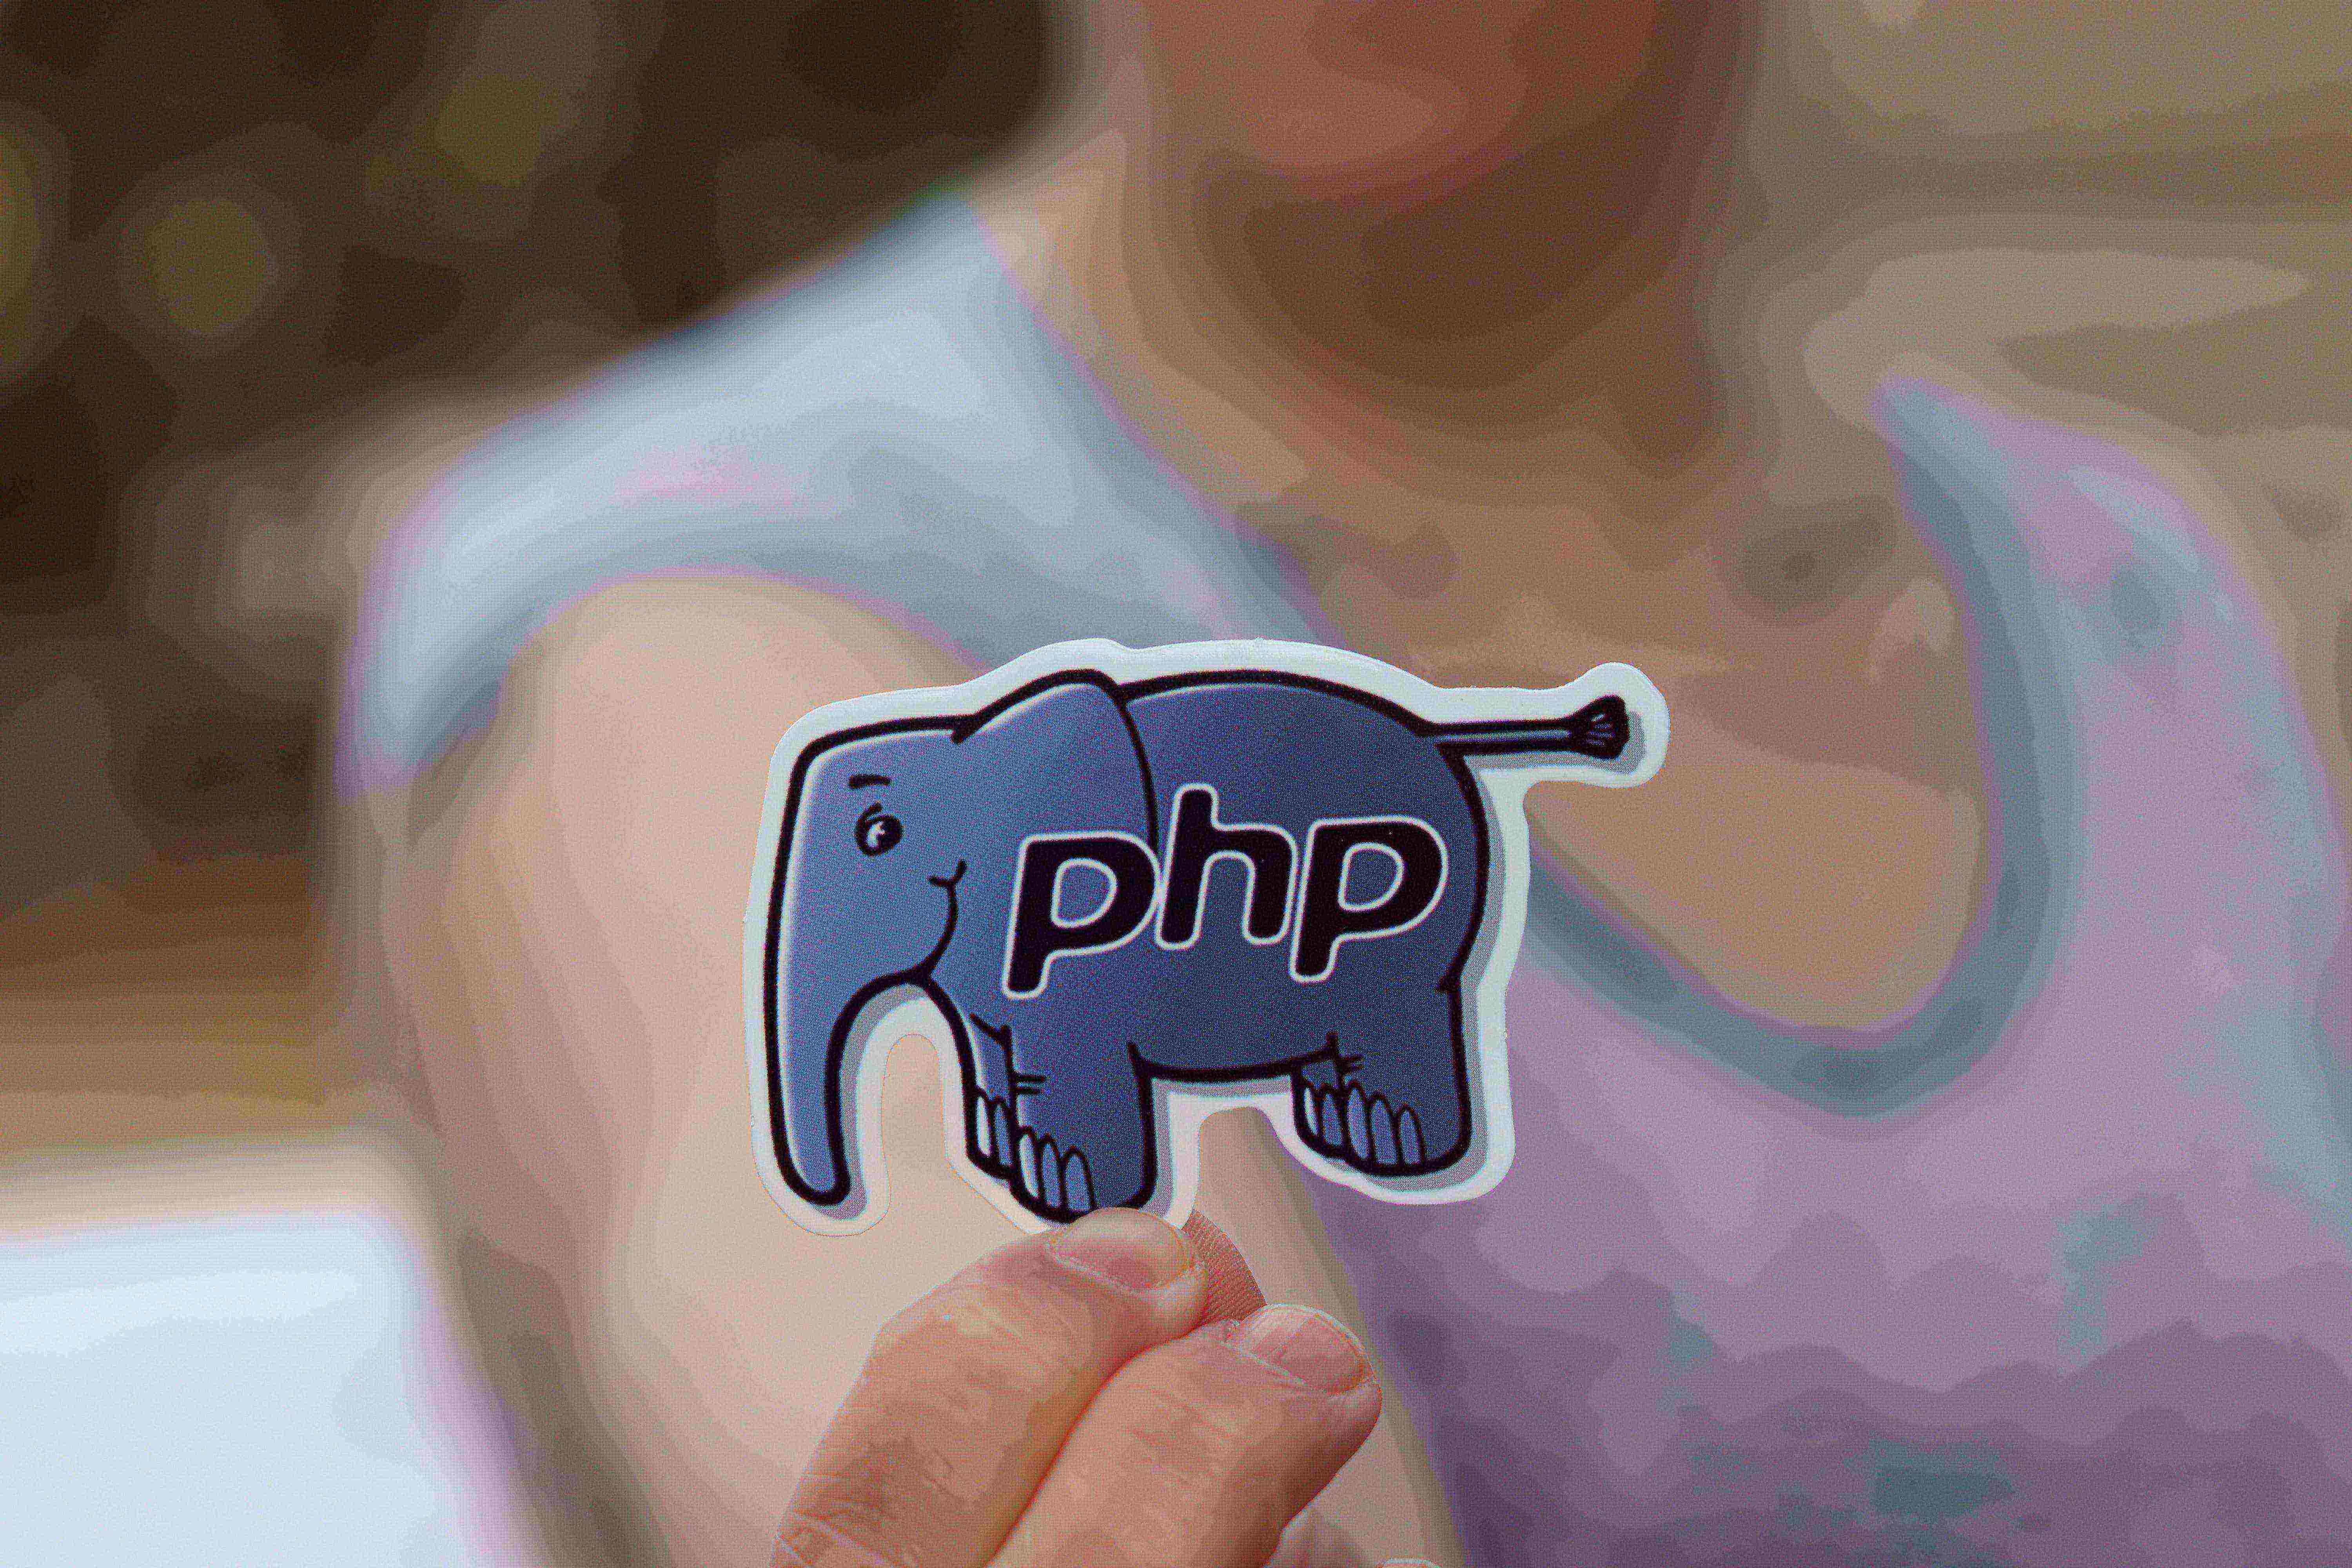 Homem segura um adesivo em formato de elefante, dentro dele as iniciais de 'PHP',
         pois o elefante é considerado mascote desta linguagem de programação. 